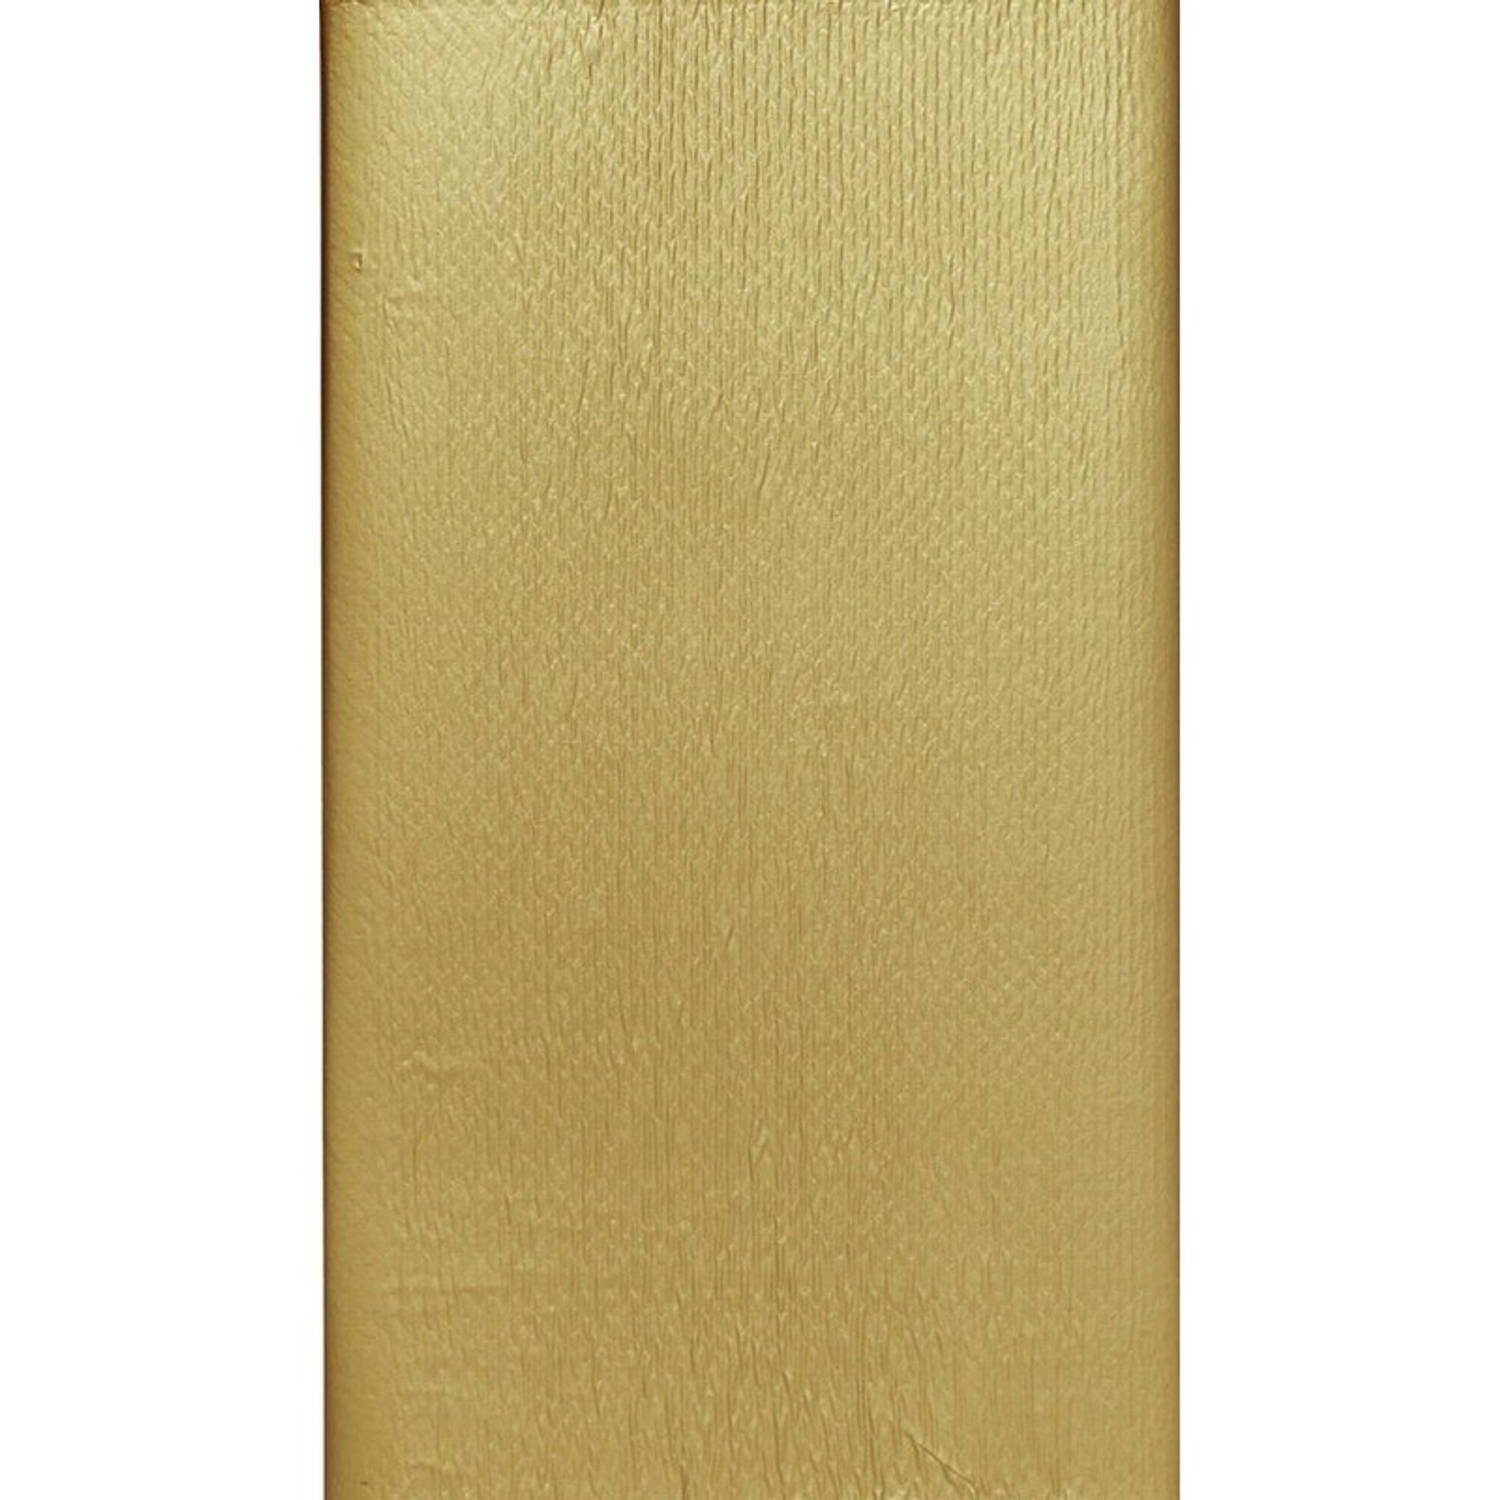 3x Luxe gouden tafel tafelkleed/tafellaken 138 x 220 cm - Feesttafelkleden